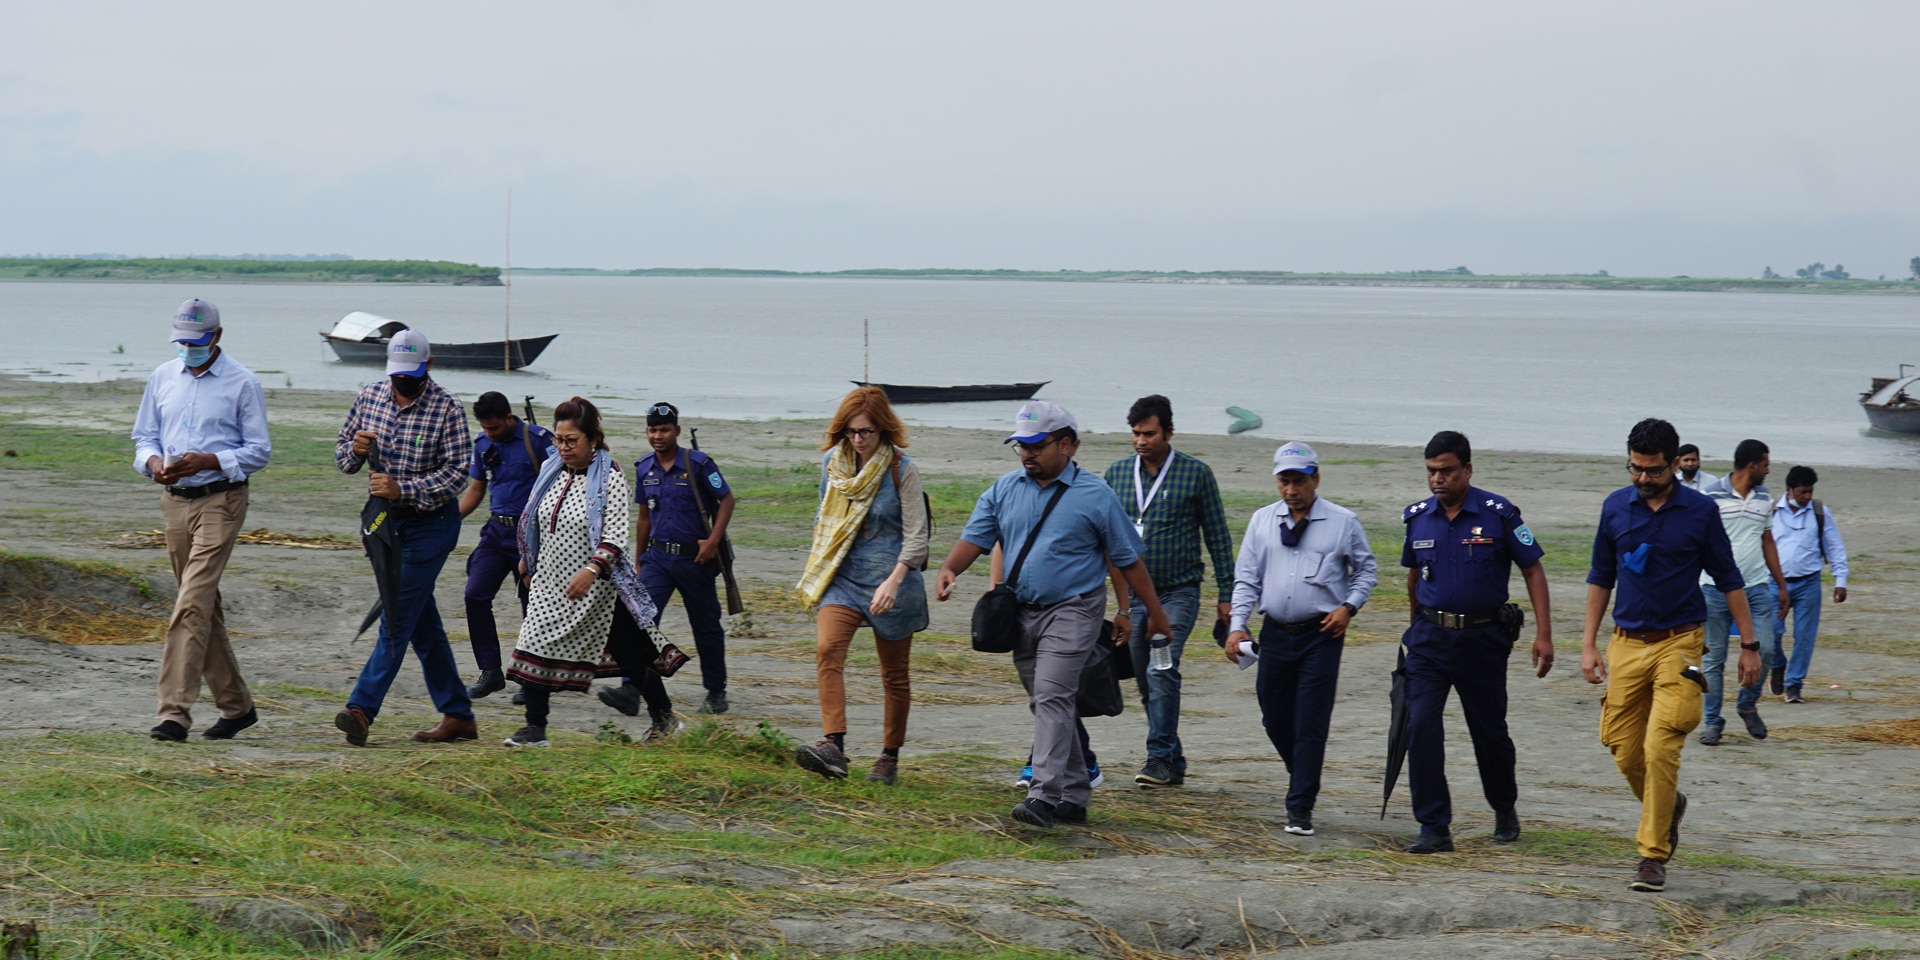 Donne e uomini in viaggio a piedi su un’isola fluviale.